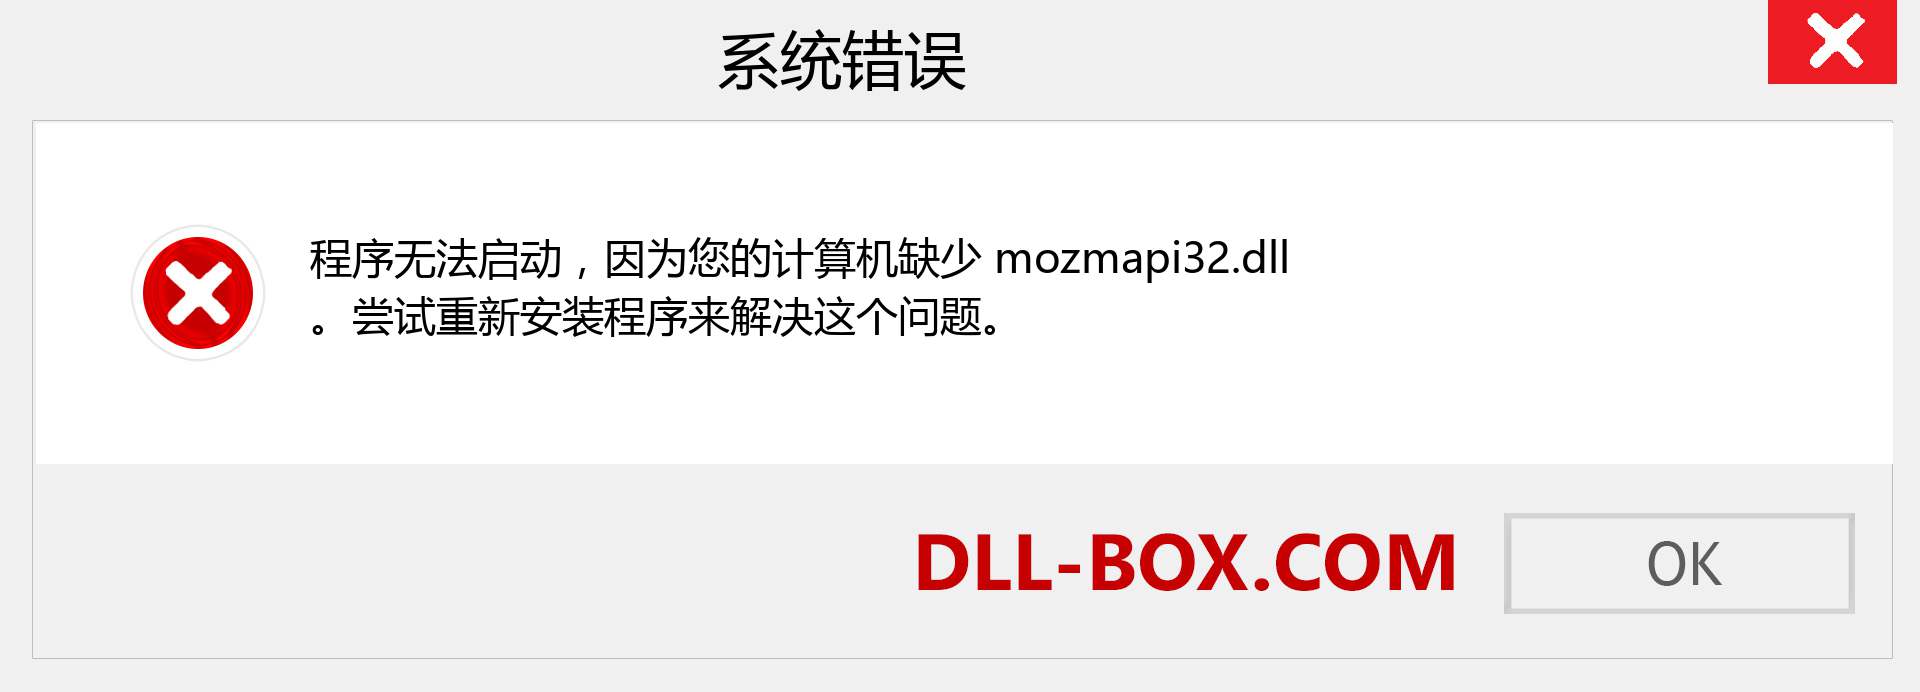 mozmapi32.dll 文件丢失？。 适用于 Windows 7、8、10 的下载 - 修复 Windows、照片、图像上的 mozmapi32 dll 丢失错误